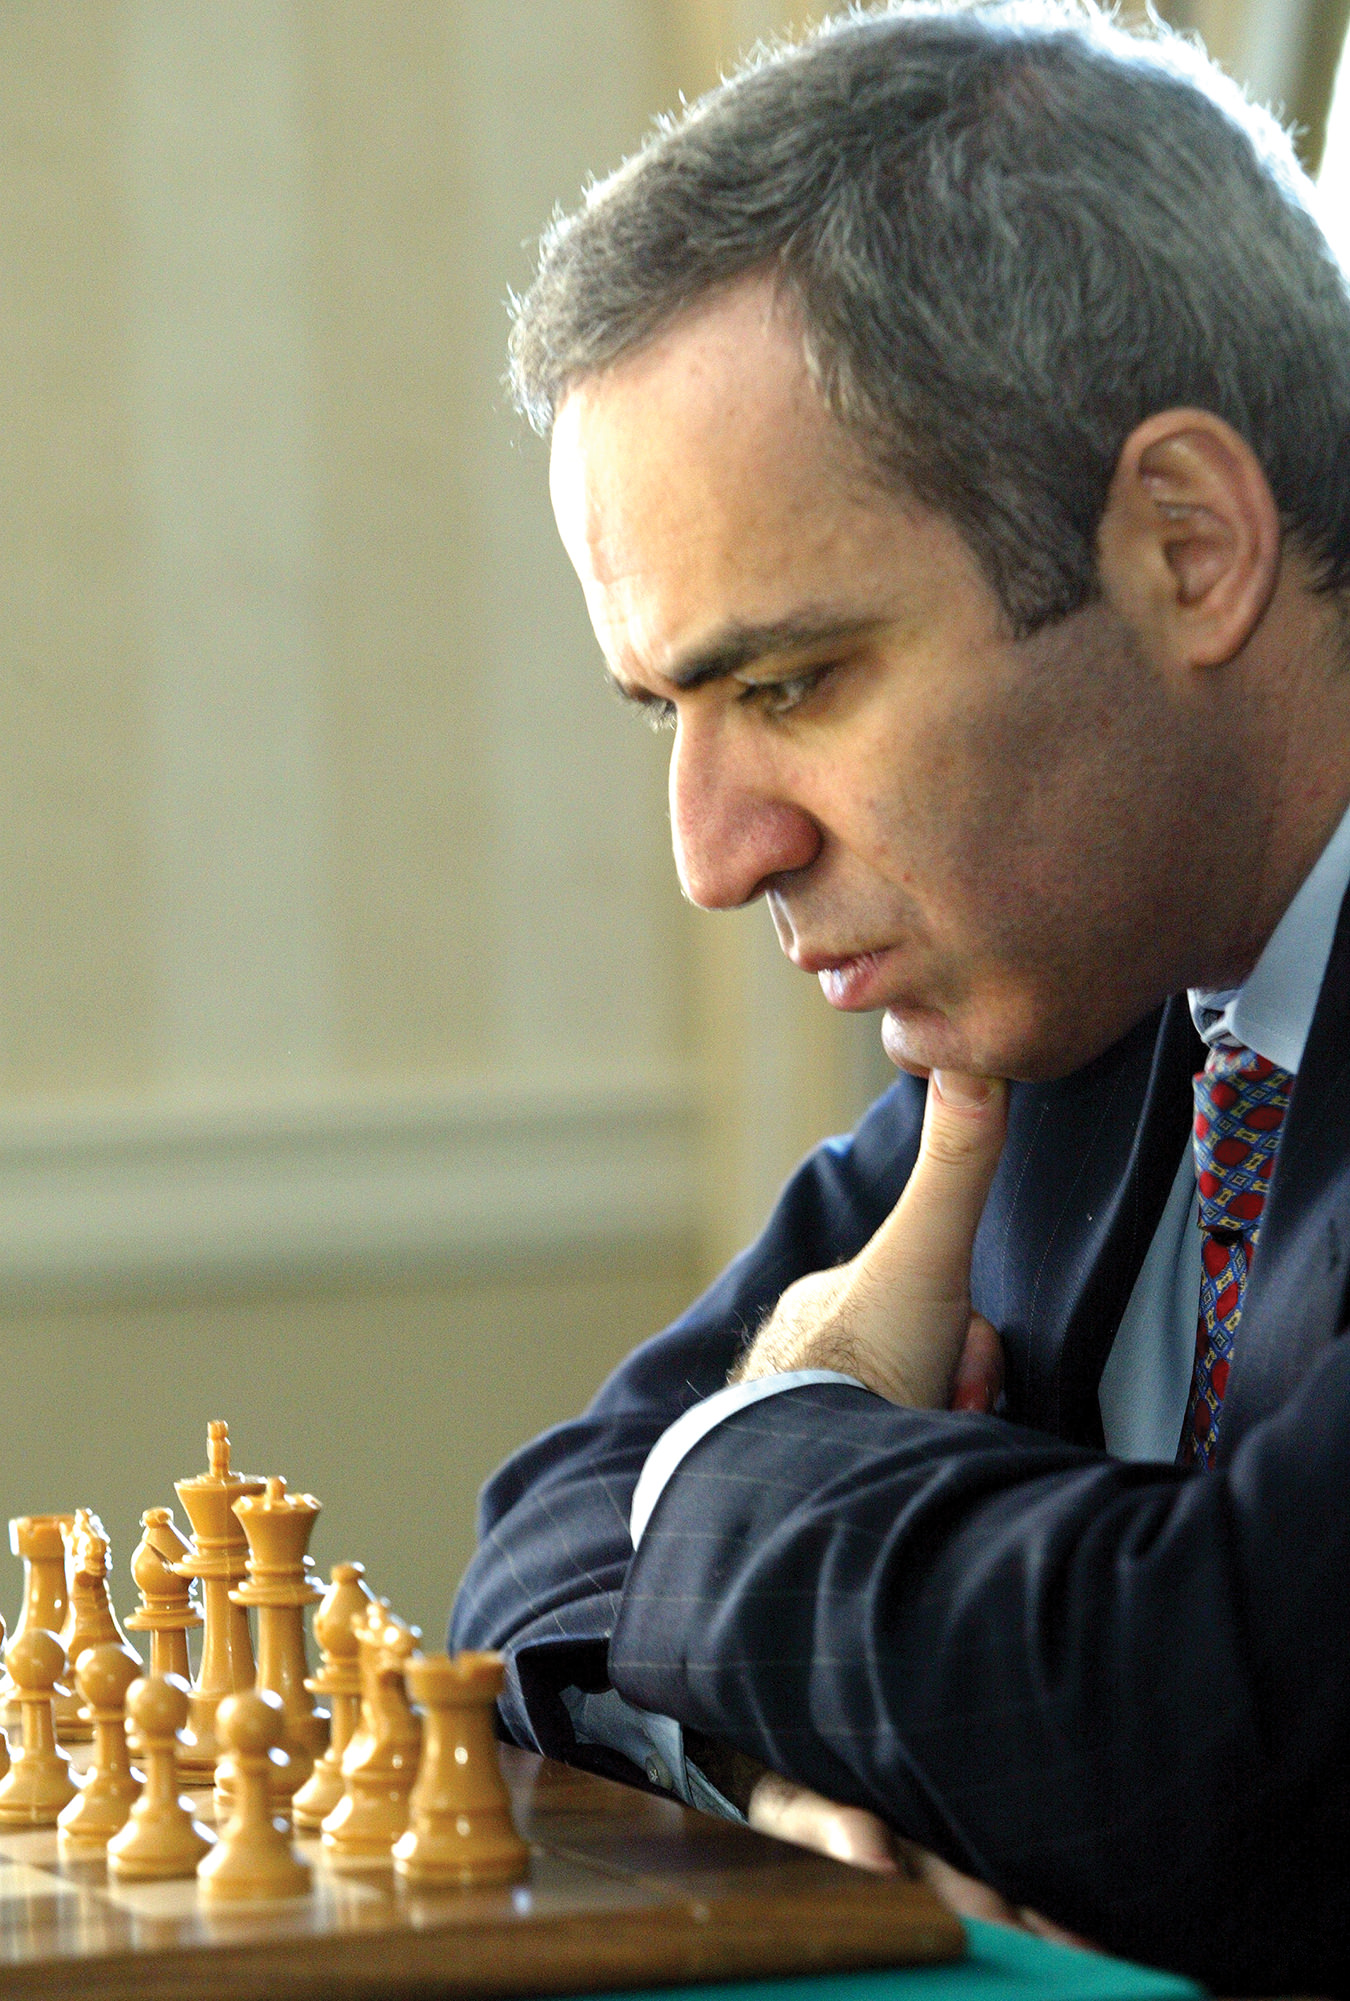 Chess Champion Garry Kasparov